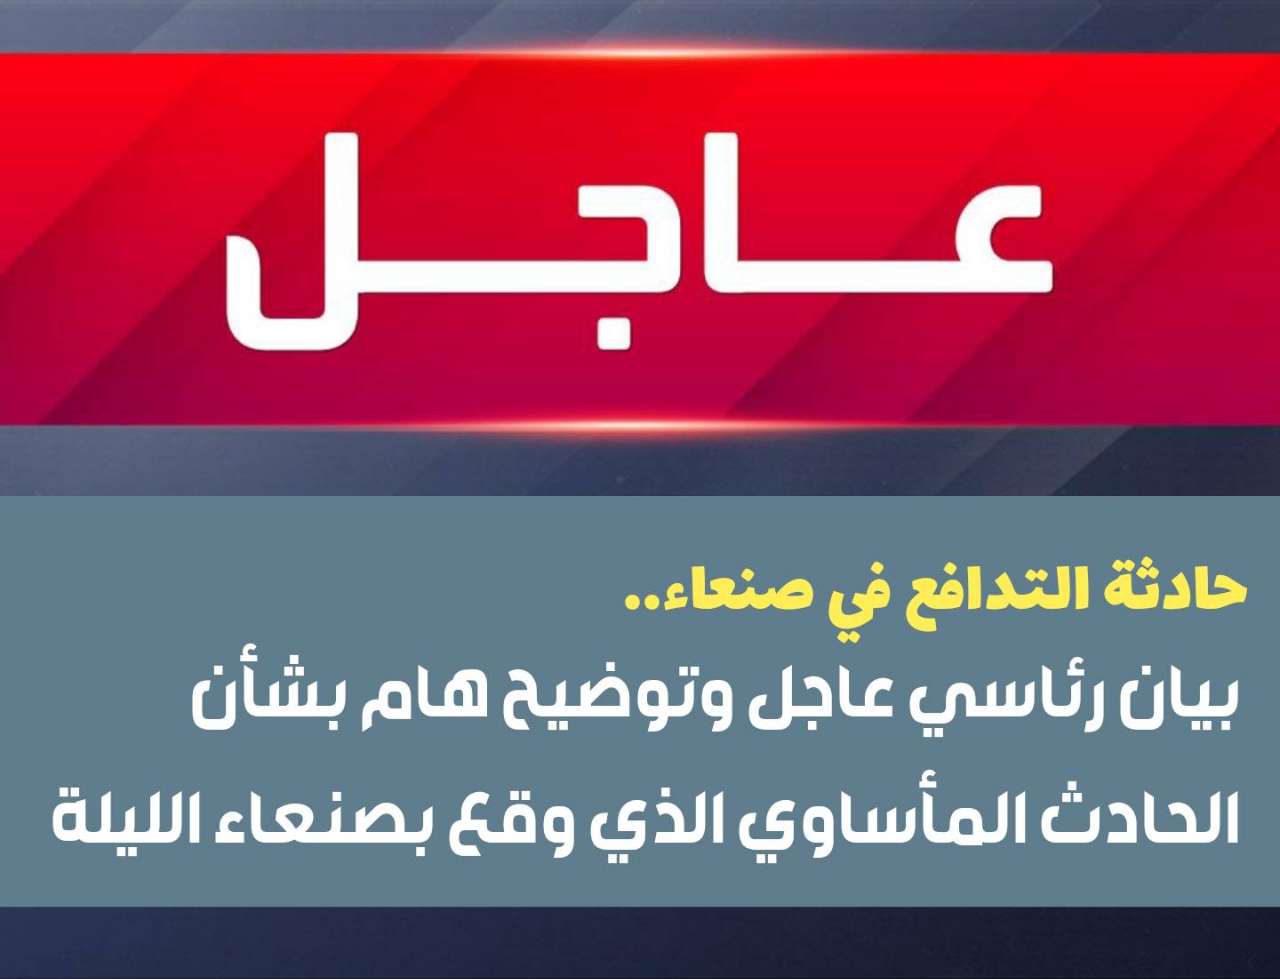 حادث التدافع في صنعاء.. بيان رئاسي عاجل وتوضيح هام بشأن الحادث المأساوي الذي وقع بصنعاء الليلة